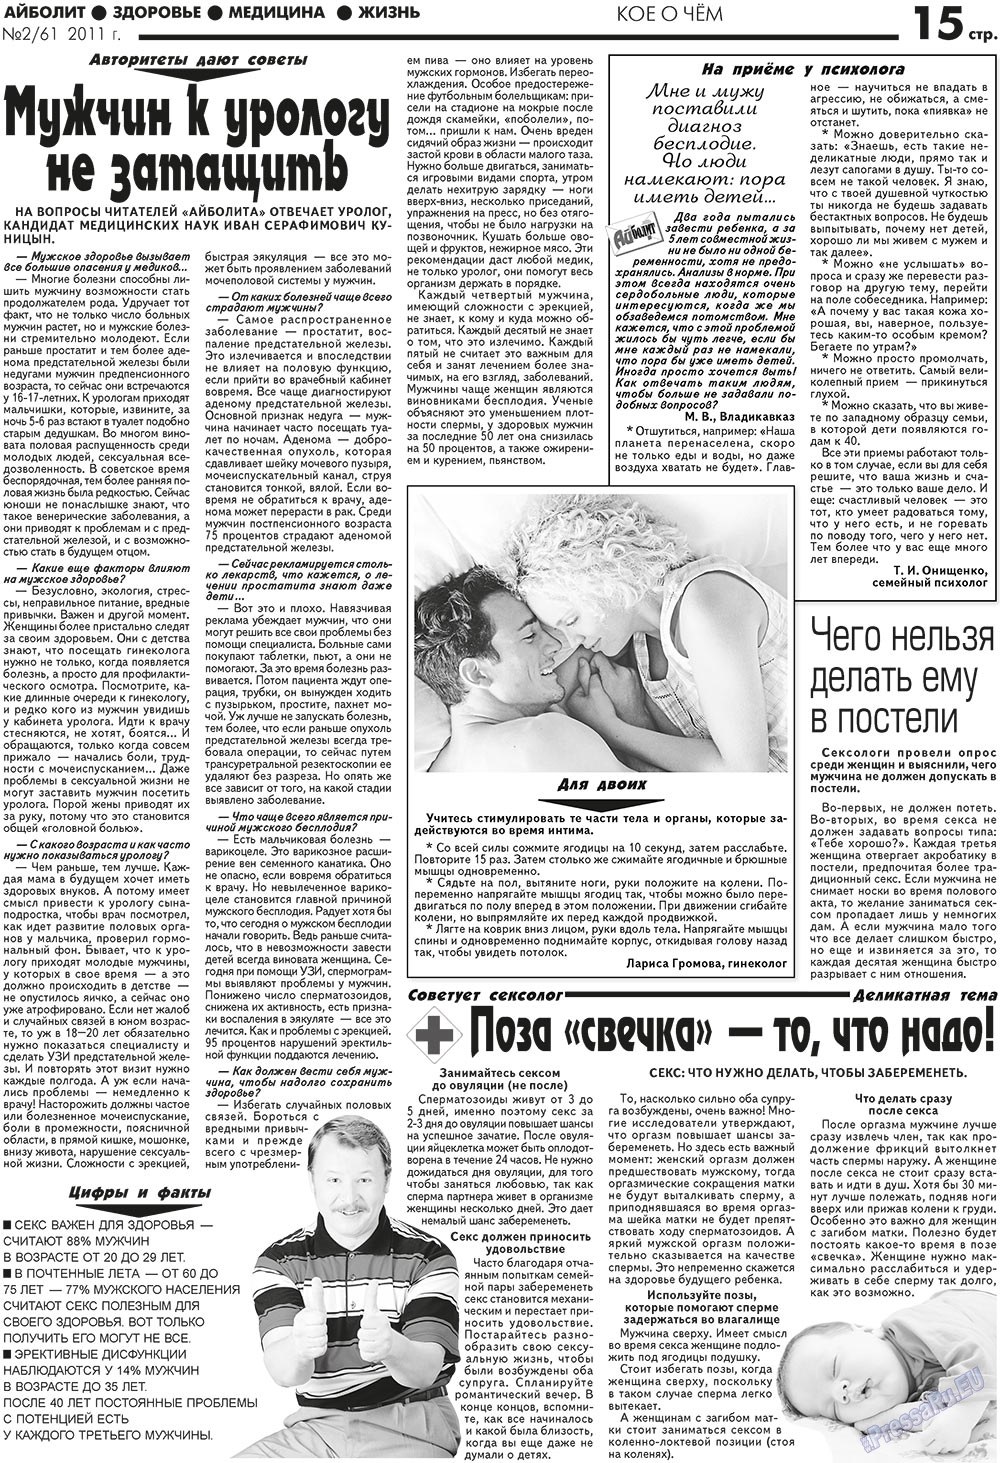 АйБолит, газета. 2011 №2 стр.15